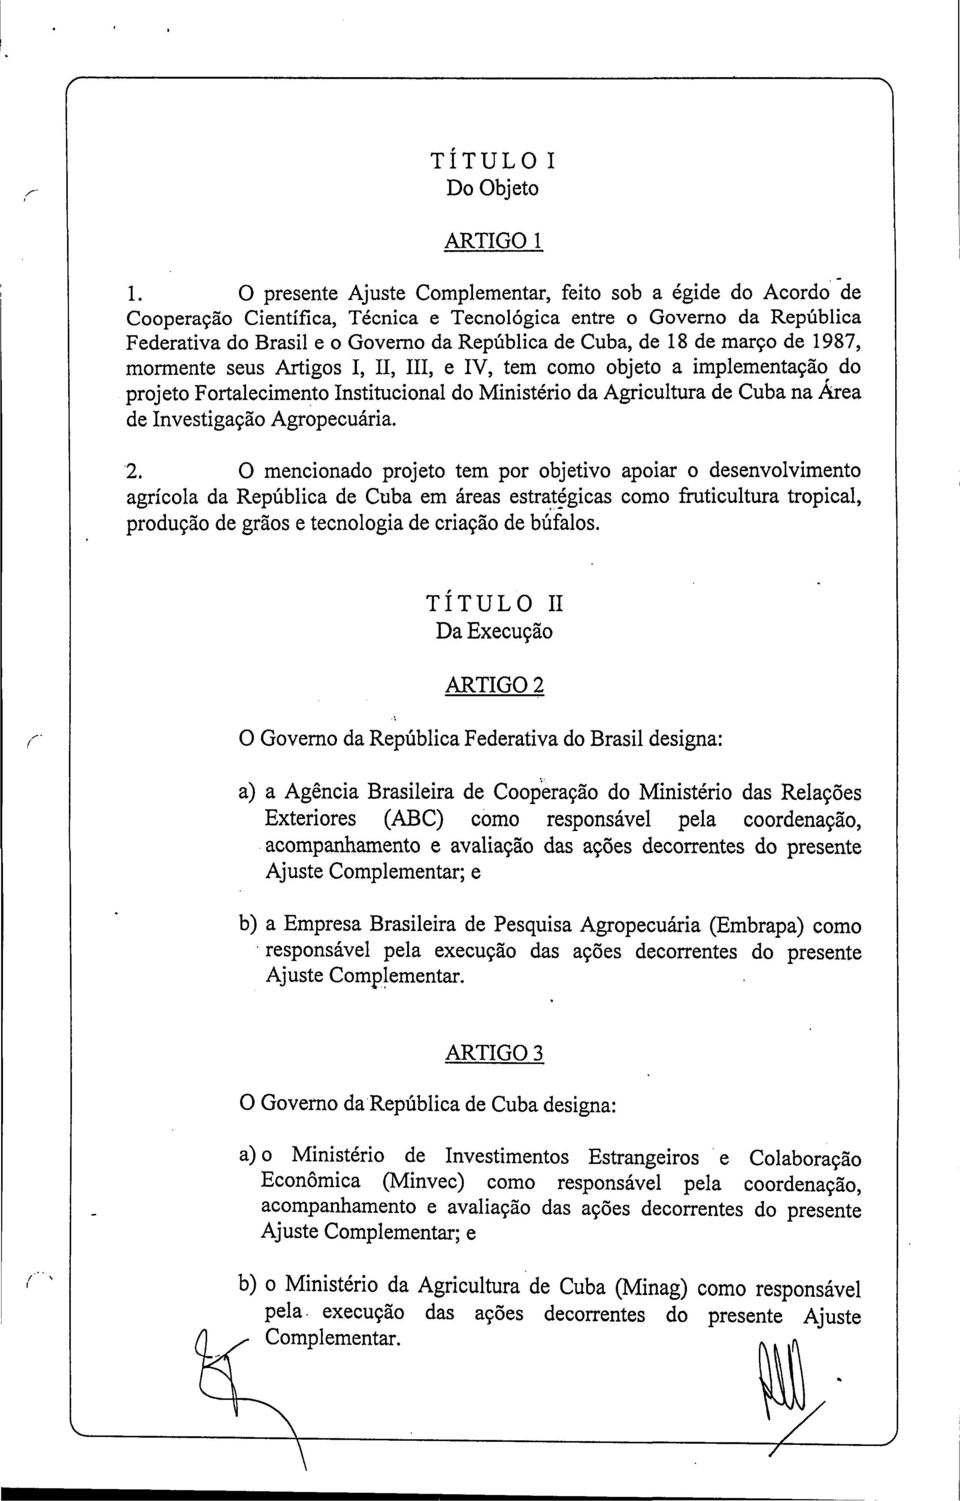 de março de 1987, mormente seus Artigos I, II, III, e IV, tem como objeto a implementação do projeto Fortalecimento Institucional do Ministério da Agricultura de Cuba na Área de Investigação